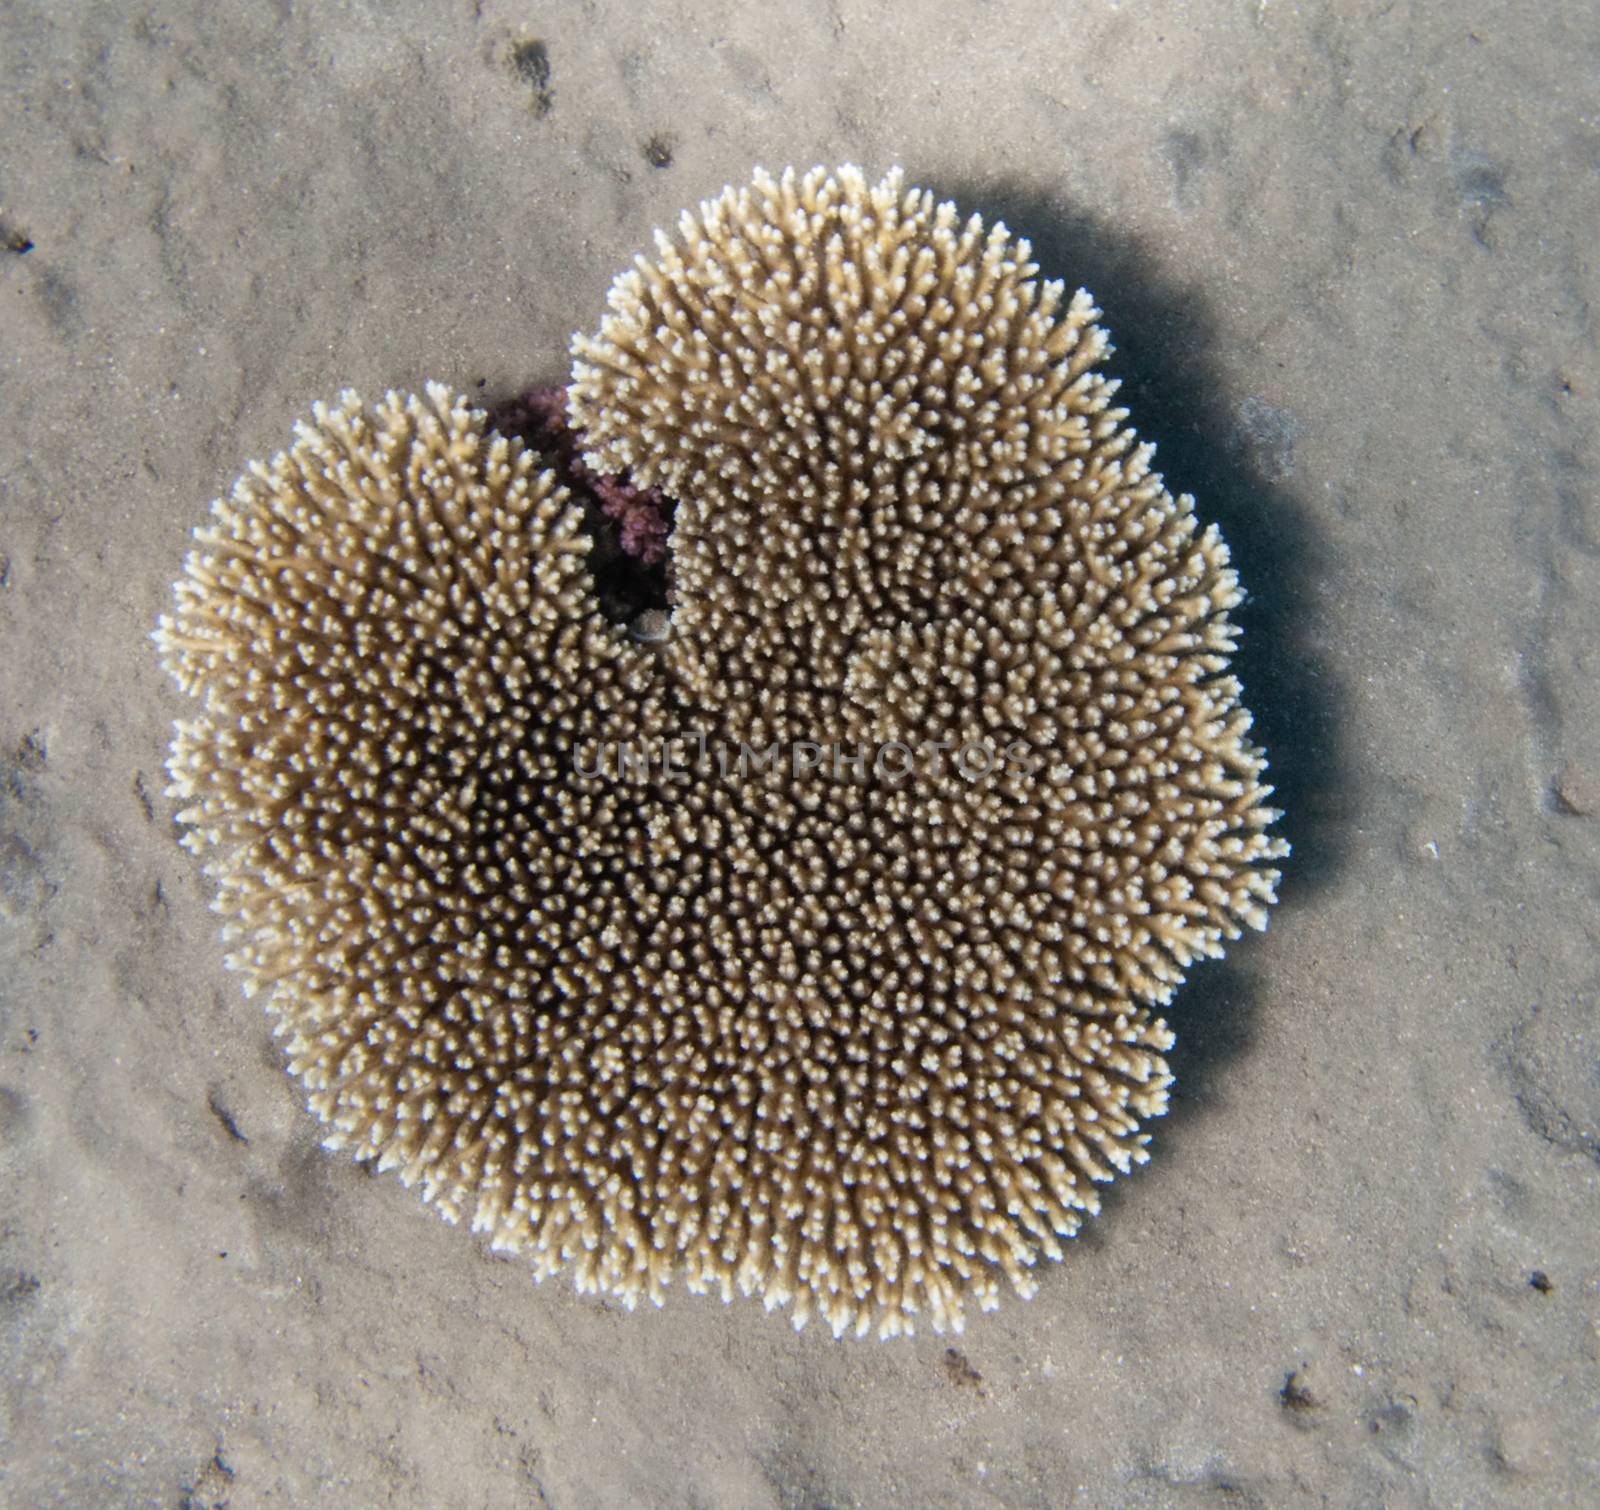 Heart-shaped Egyptian coral near Dahab by nemo269